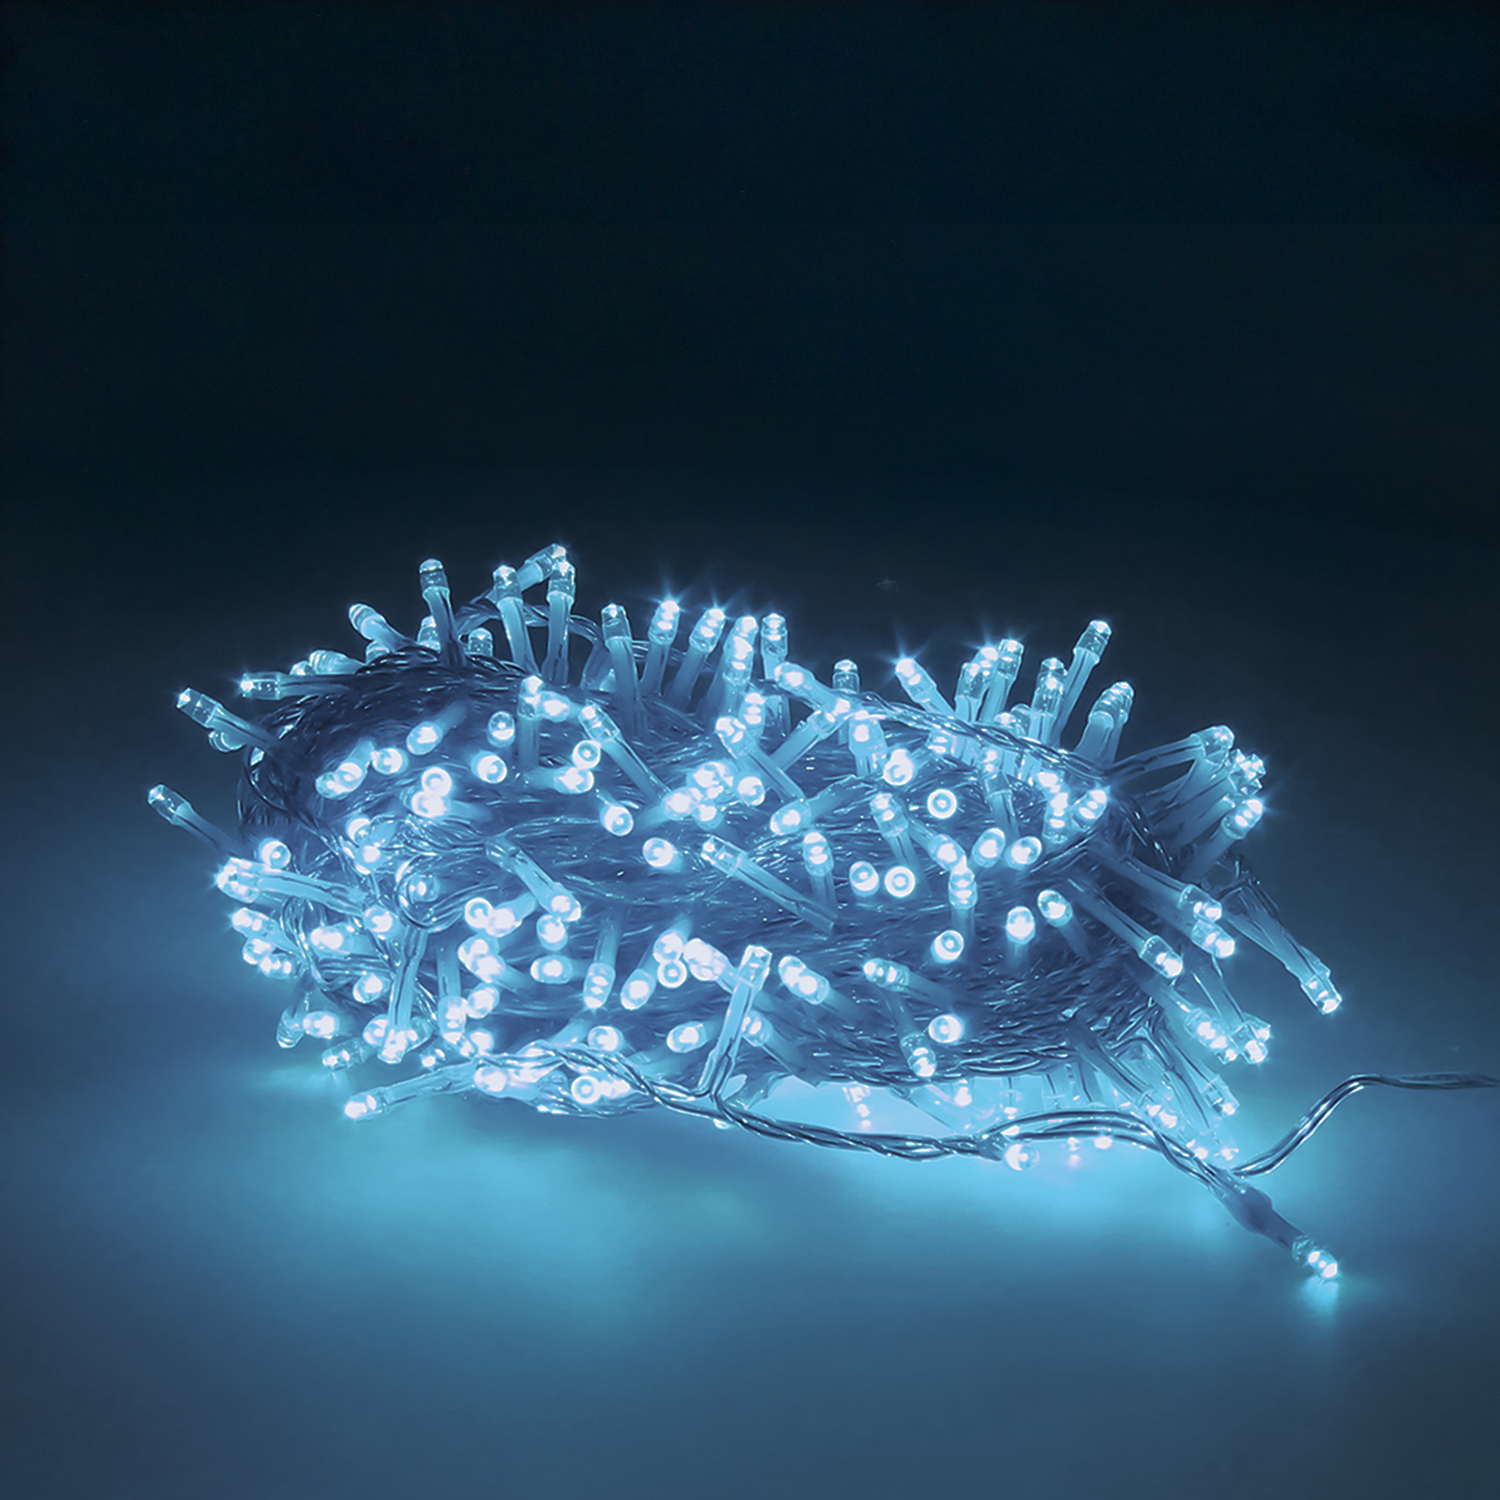 Guinalda Luces Navidad 300 Leds Color Azul Hielo. Luz Navidad Interiores y Exteriores Ip44. Cable Tr